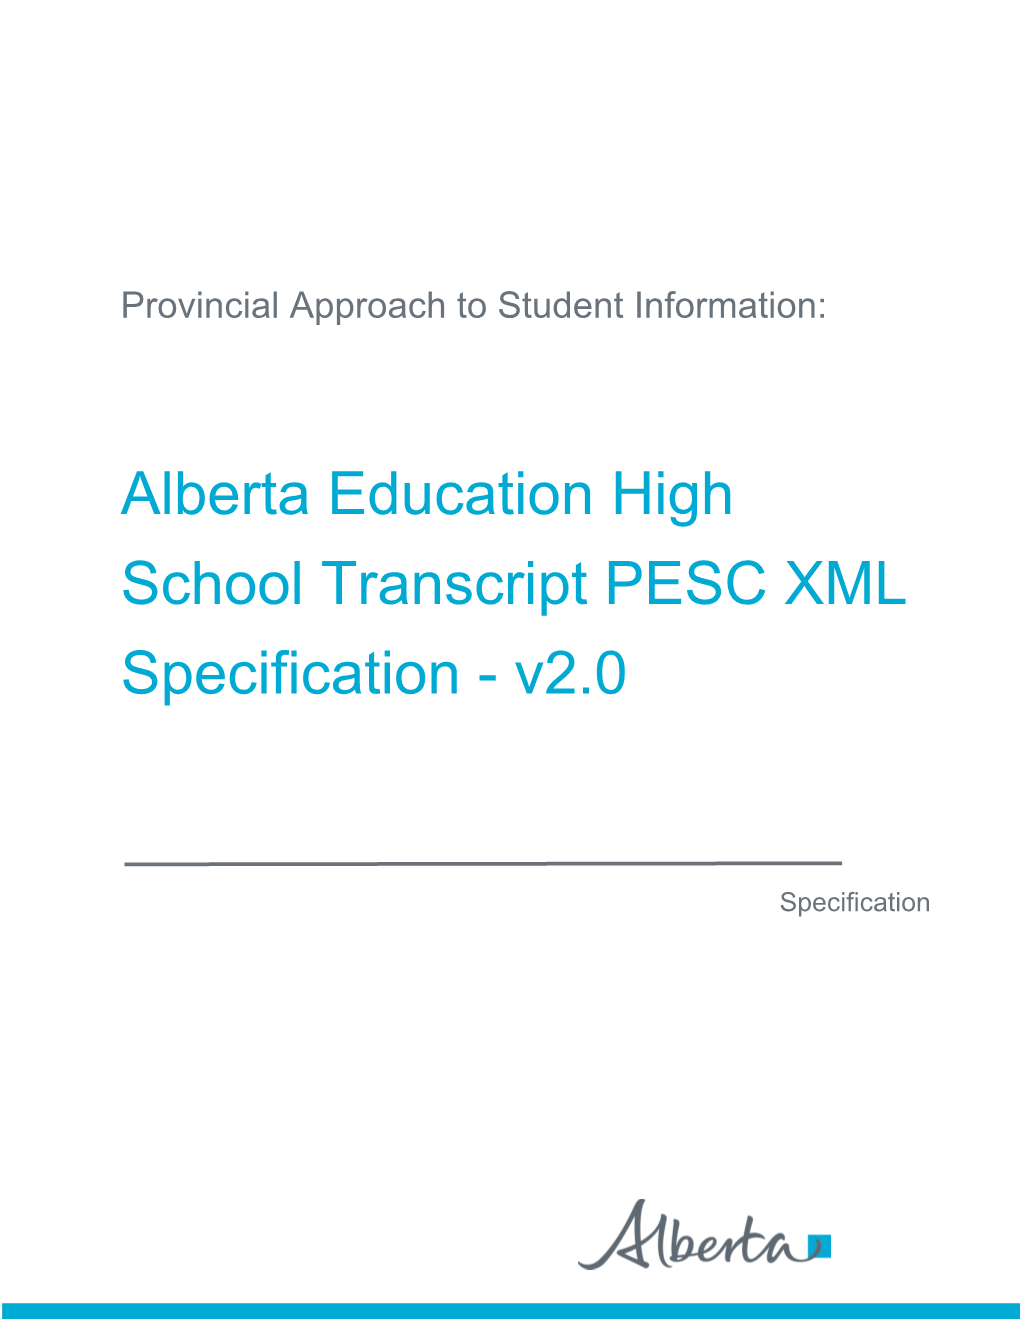 Alberta Education High School Transcript PESC XML Specification - V2.0